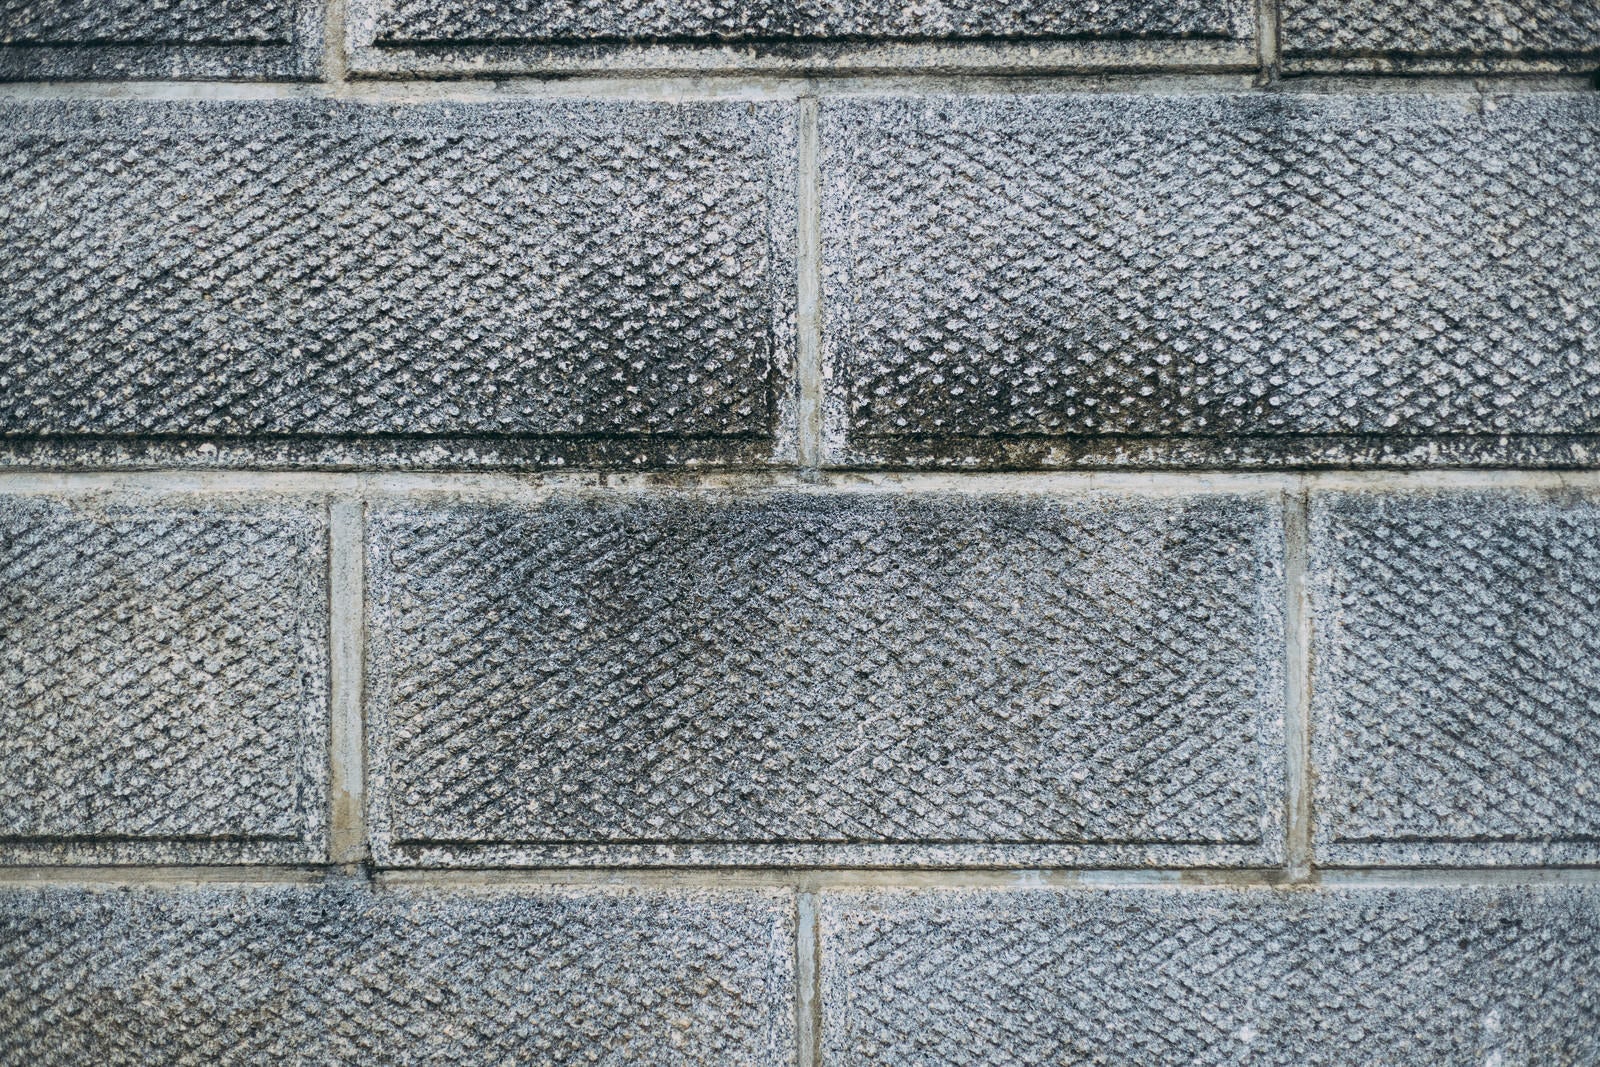 「表面に模様のあるブロック塀のテクスチャー」の写真